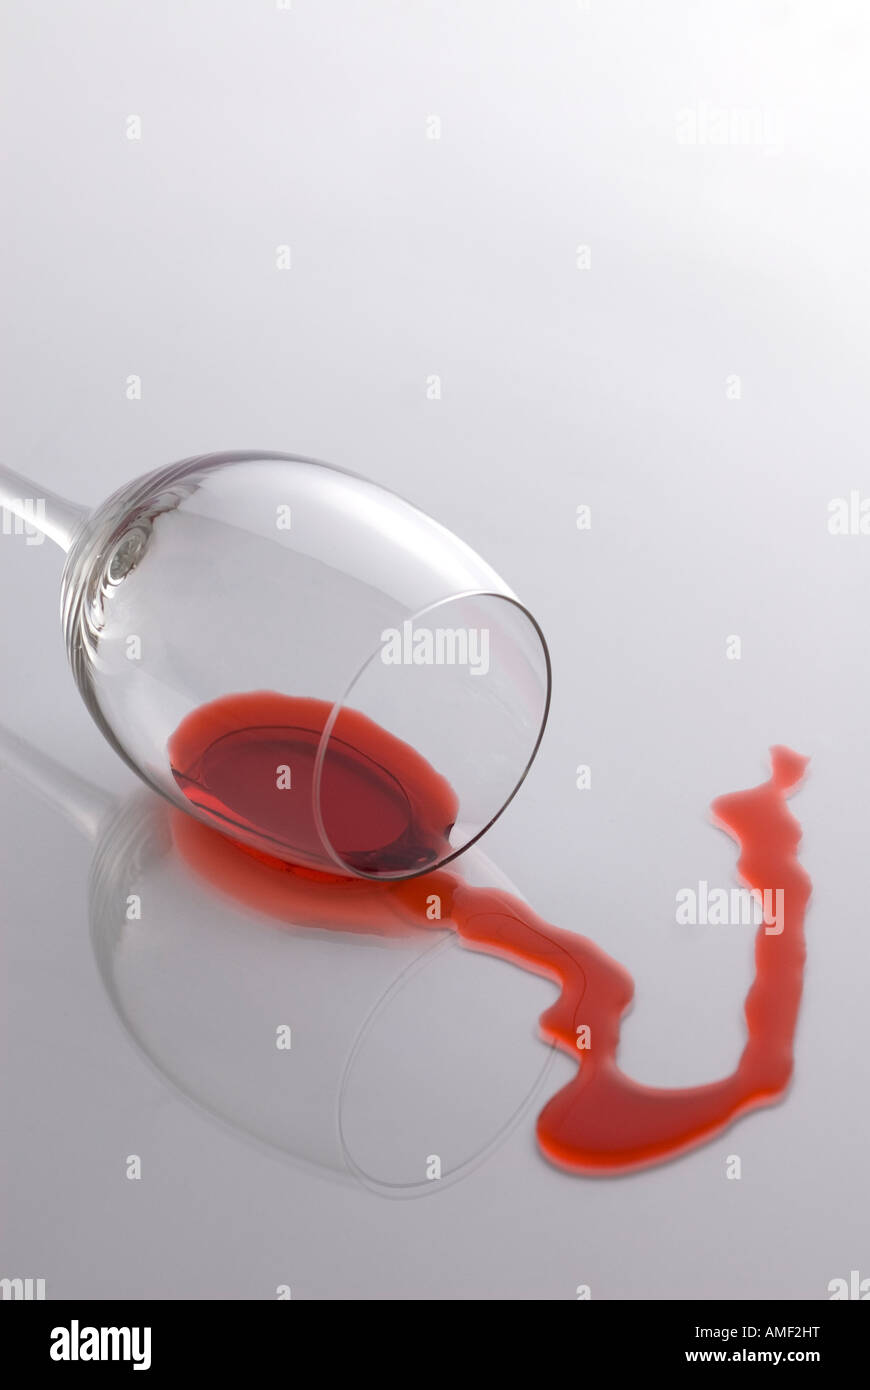 Bicchiere caduto immagini e fotografie stock ad alta risoluzione - Alamy